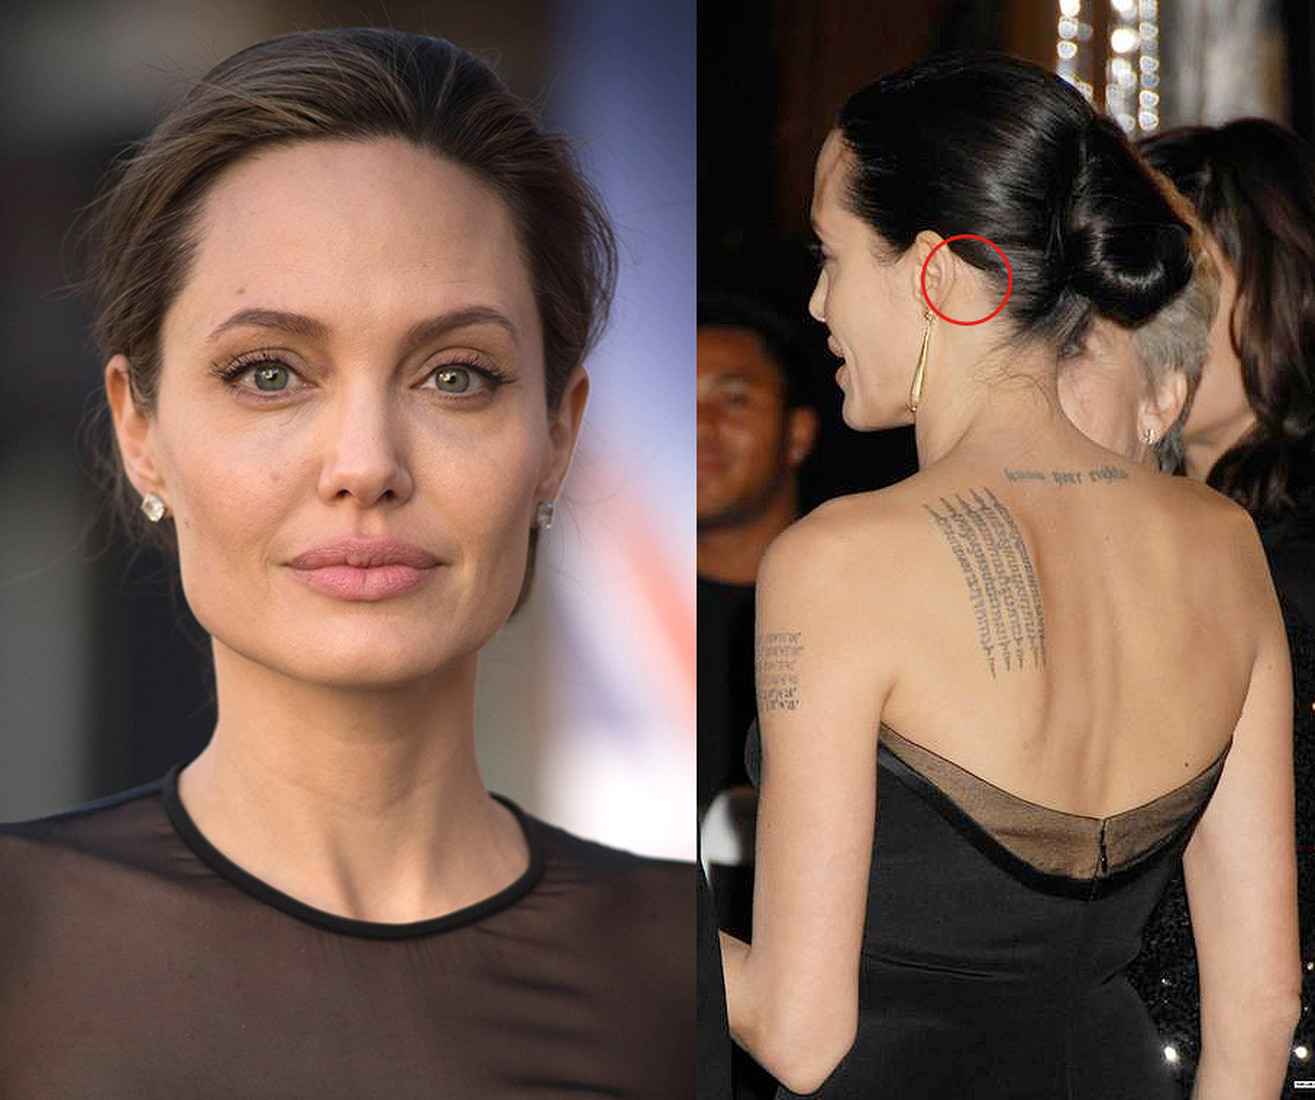 Angelina Jolie trước và sau khi phẫu thuật thẩm mỹ. Tuyển tập những bức ảnh của nữ diễn viên trước và sau khi phẫu thuật nâng mũi, nâng mũi plasma